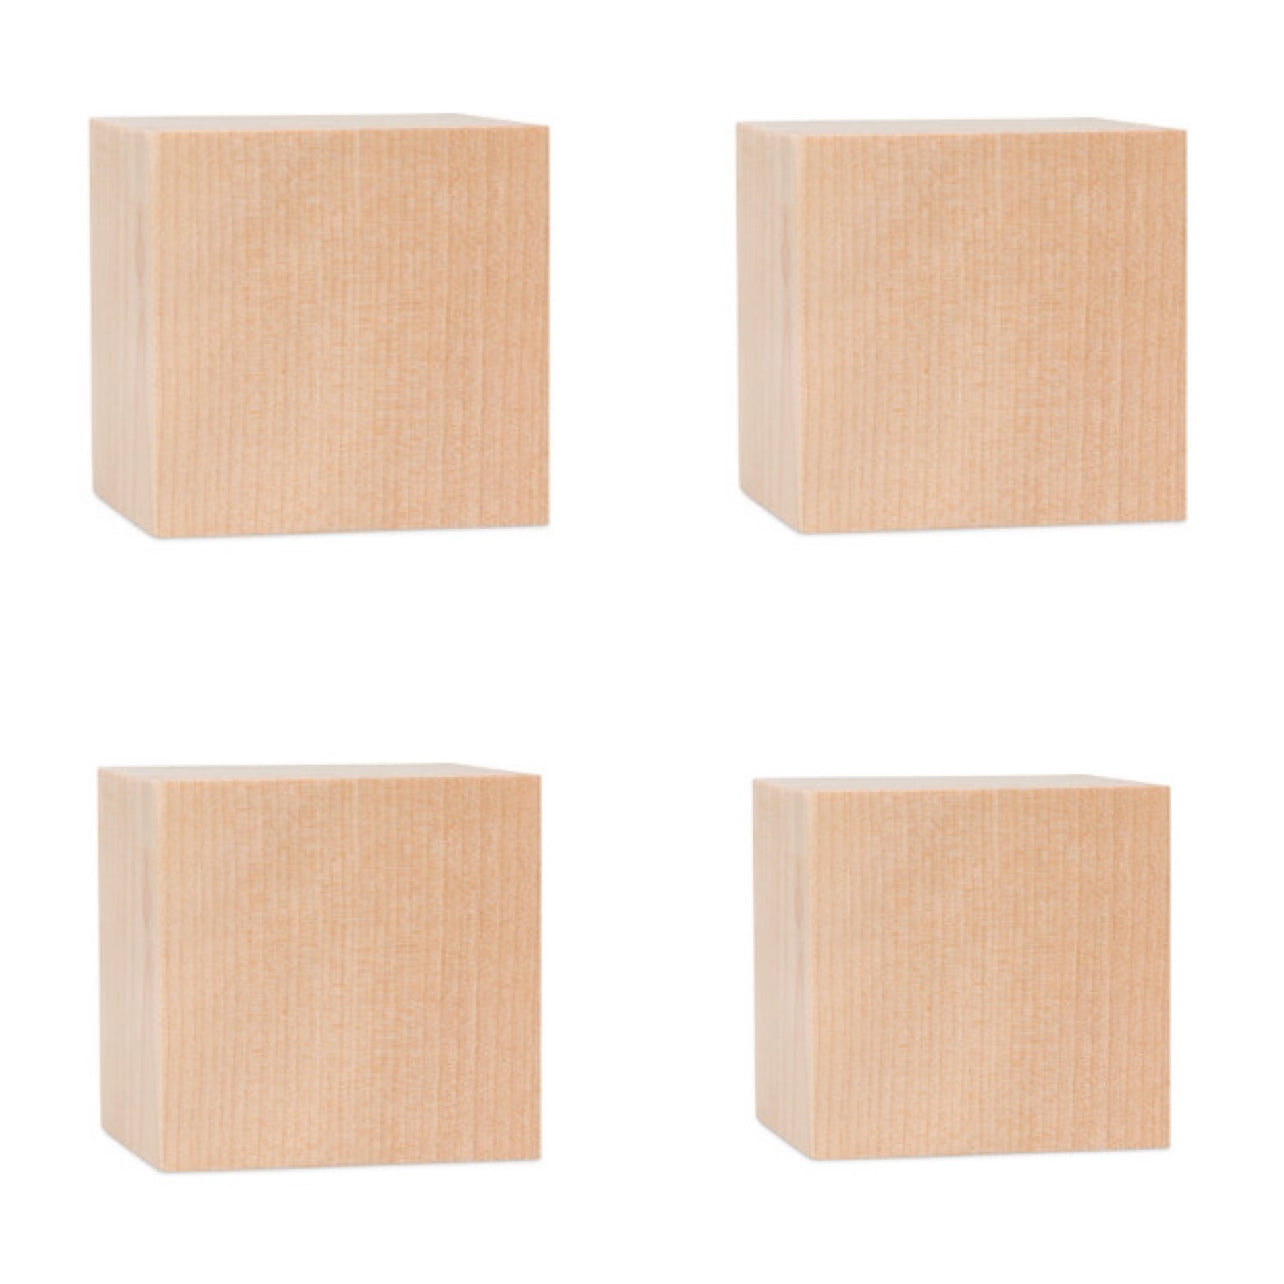 Wooden Cubes Large Size Set of 4 || مكعبات خشب حجم كبير شد 4